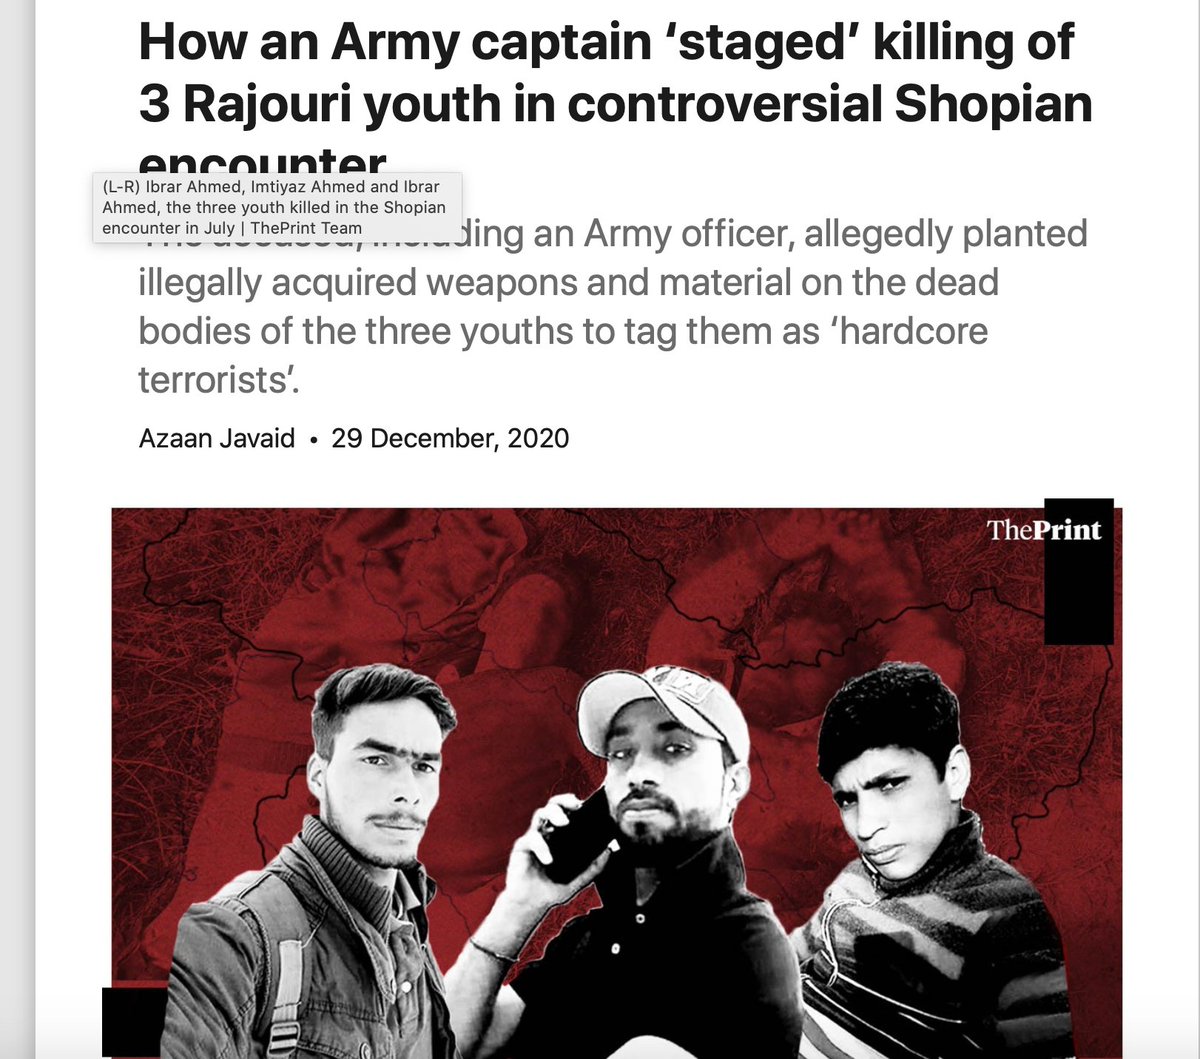 भारतीय सेना के राष्ट्रीय राइफ़ल्ज़ के कप्तान भूपेन्द्र सिंघ ने 3 कश्मीरी युवाओं को अपने घर से अगवा किया, उनकी हत्या की और हत्या को "आतंकियों के साथ एंकाउंटर" बताया. क्या ऐसी हरकत भारत के संविधान के टुकड़े टुकड़े करना नहीं है? कितने न्यूज़ चैनल इन्हें "देश द्रोही" कहेंगे?